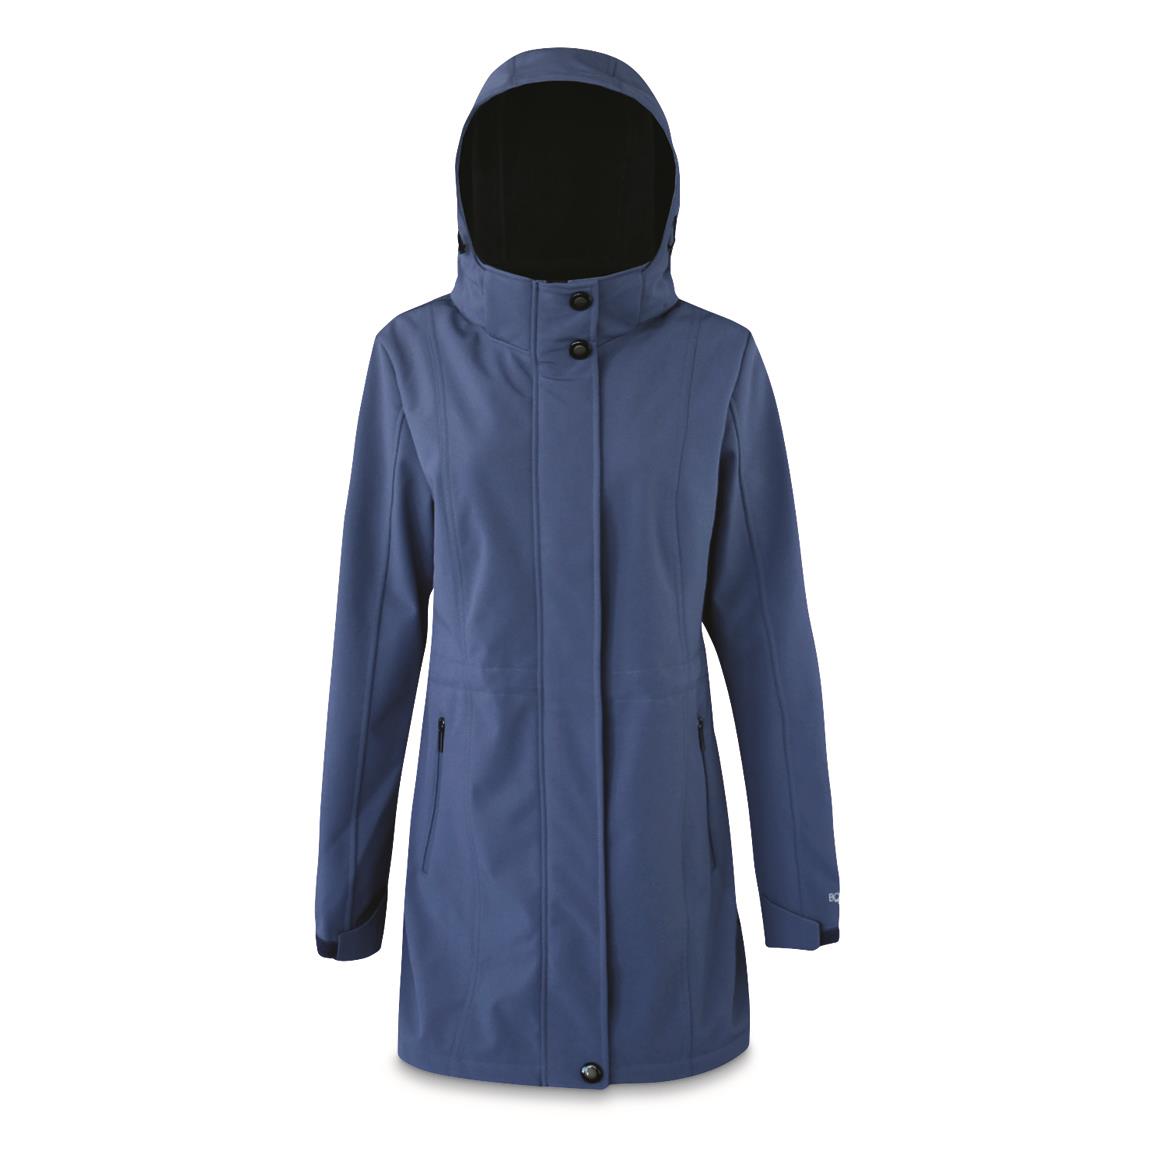 Boulder Gear Women's Cascade Waterproof Lined Softshell Jacket, Gray Blue